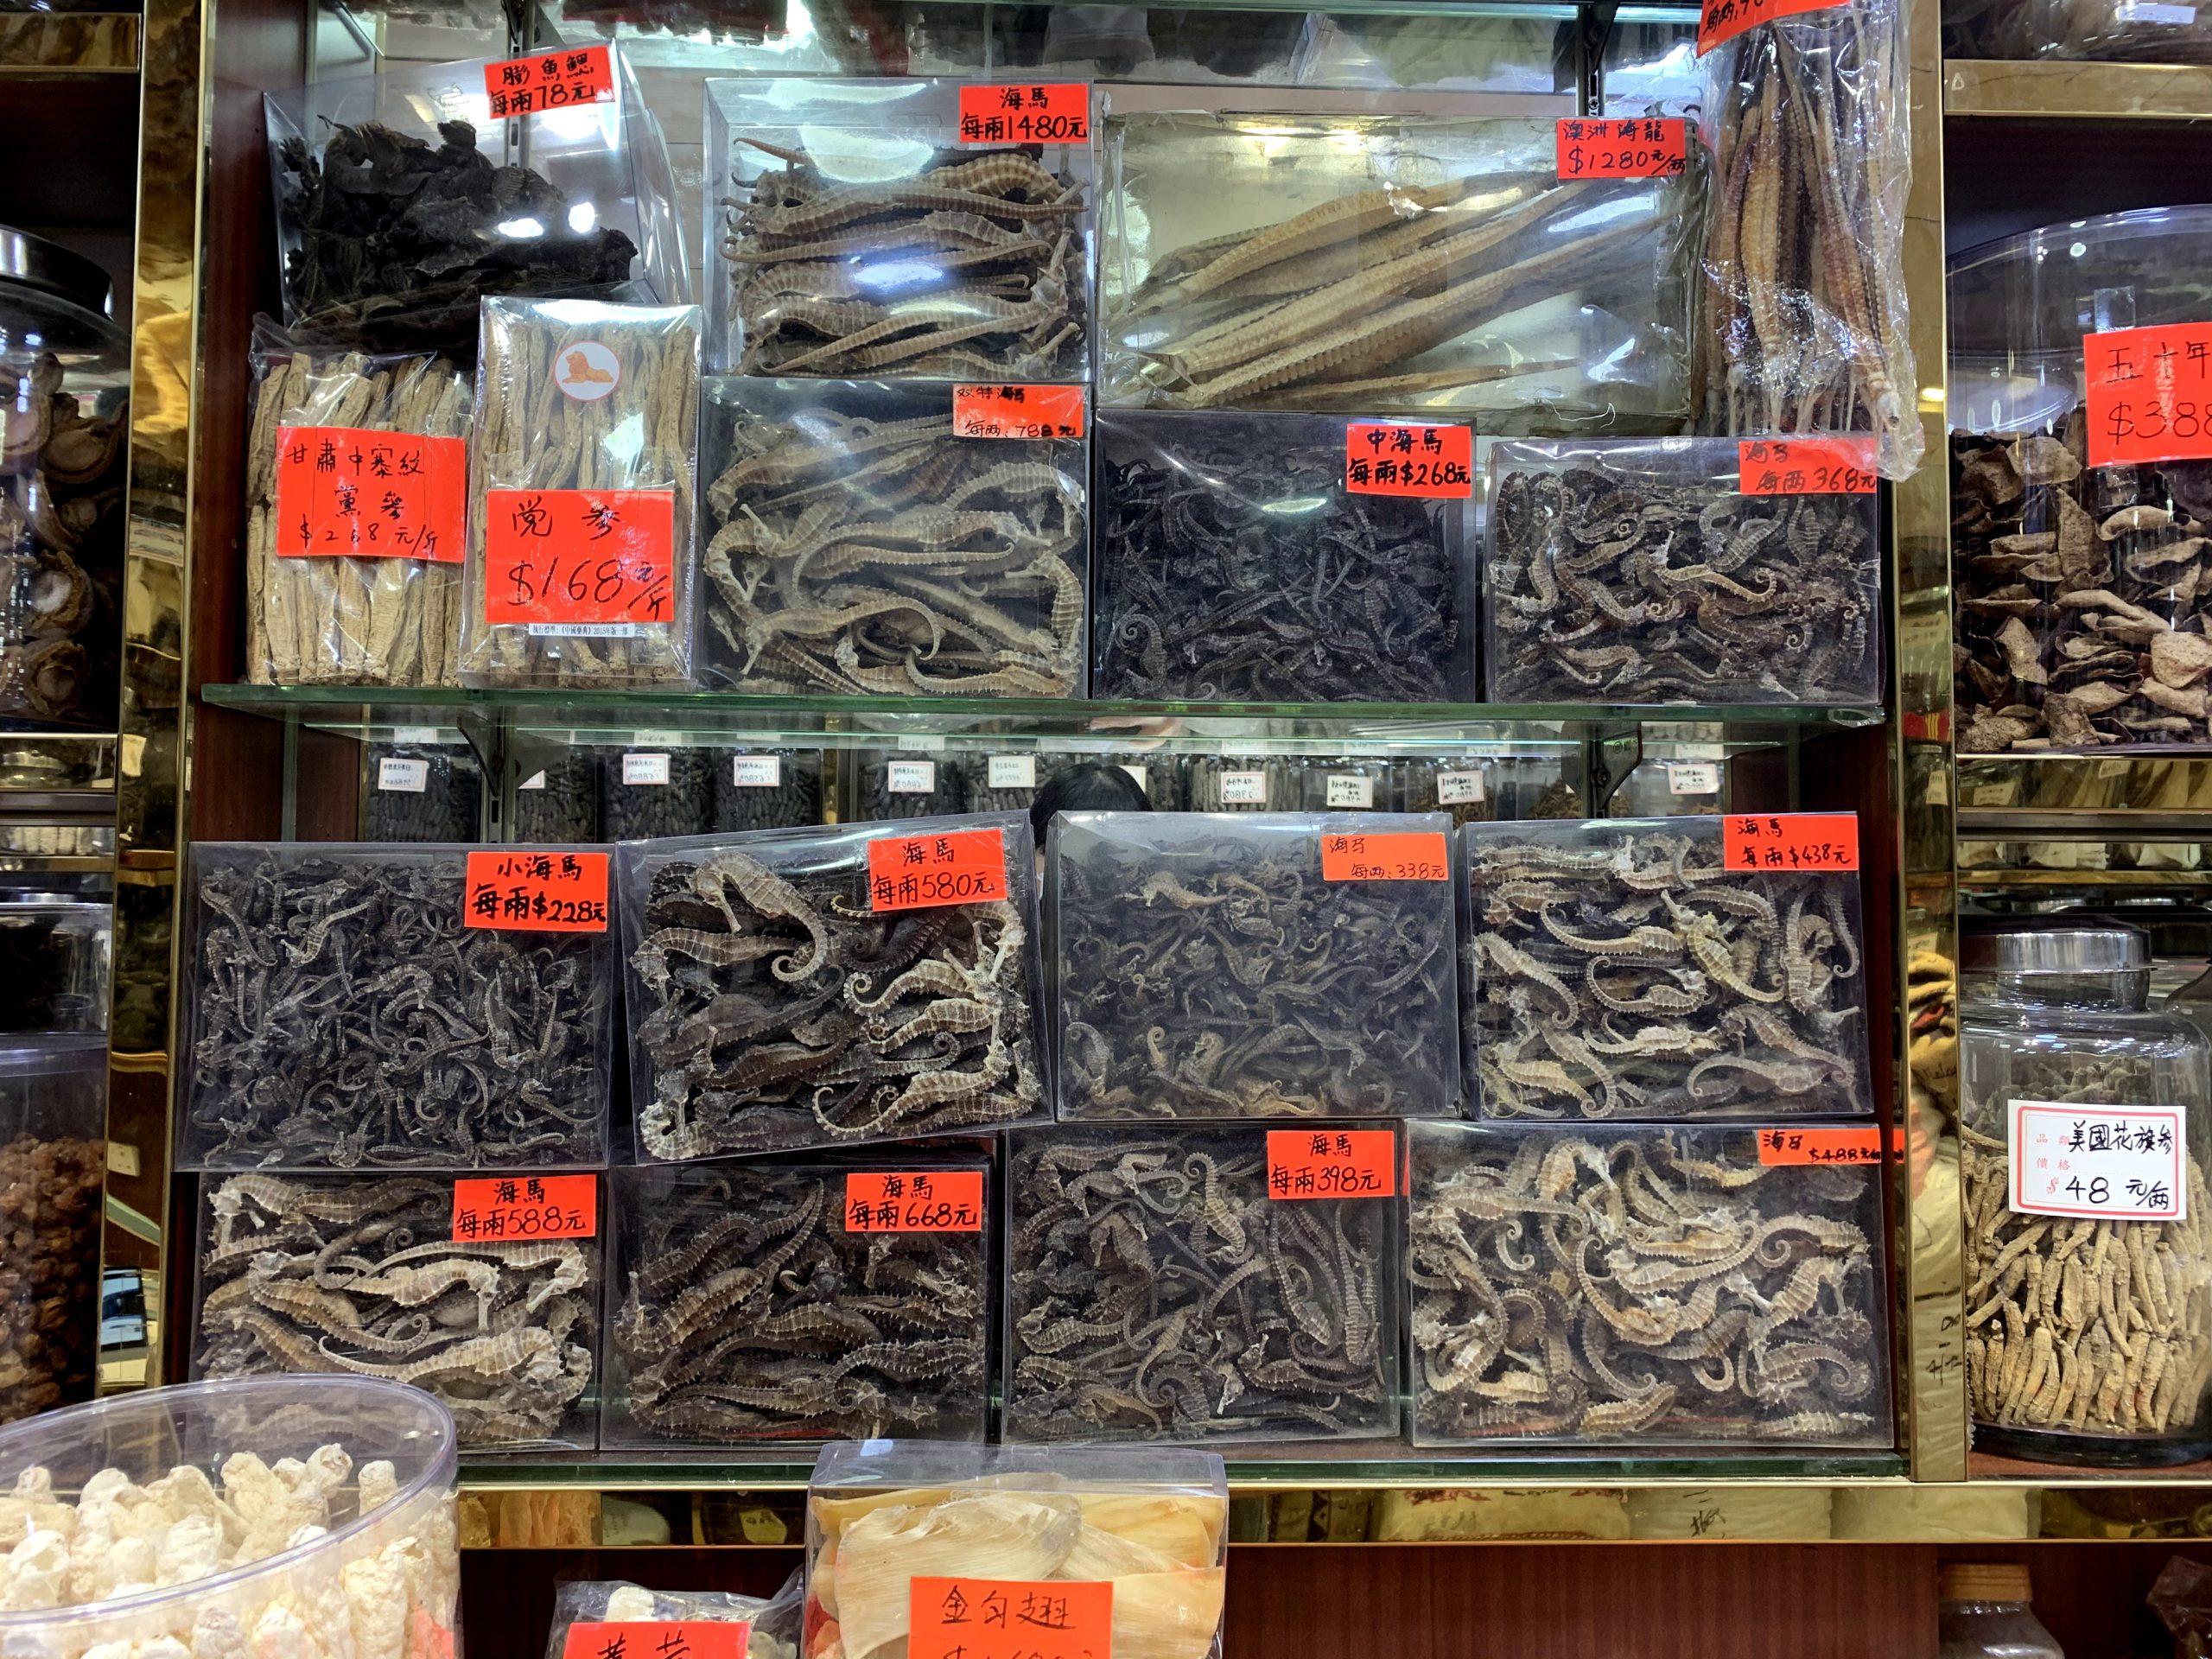 caballitos marinos y otras especies acuáticas en un mercado en un mercado de Hong Kong